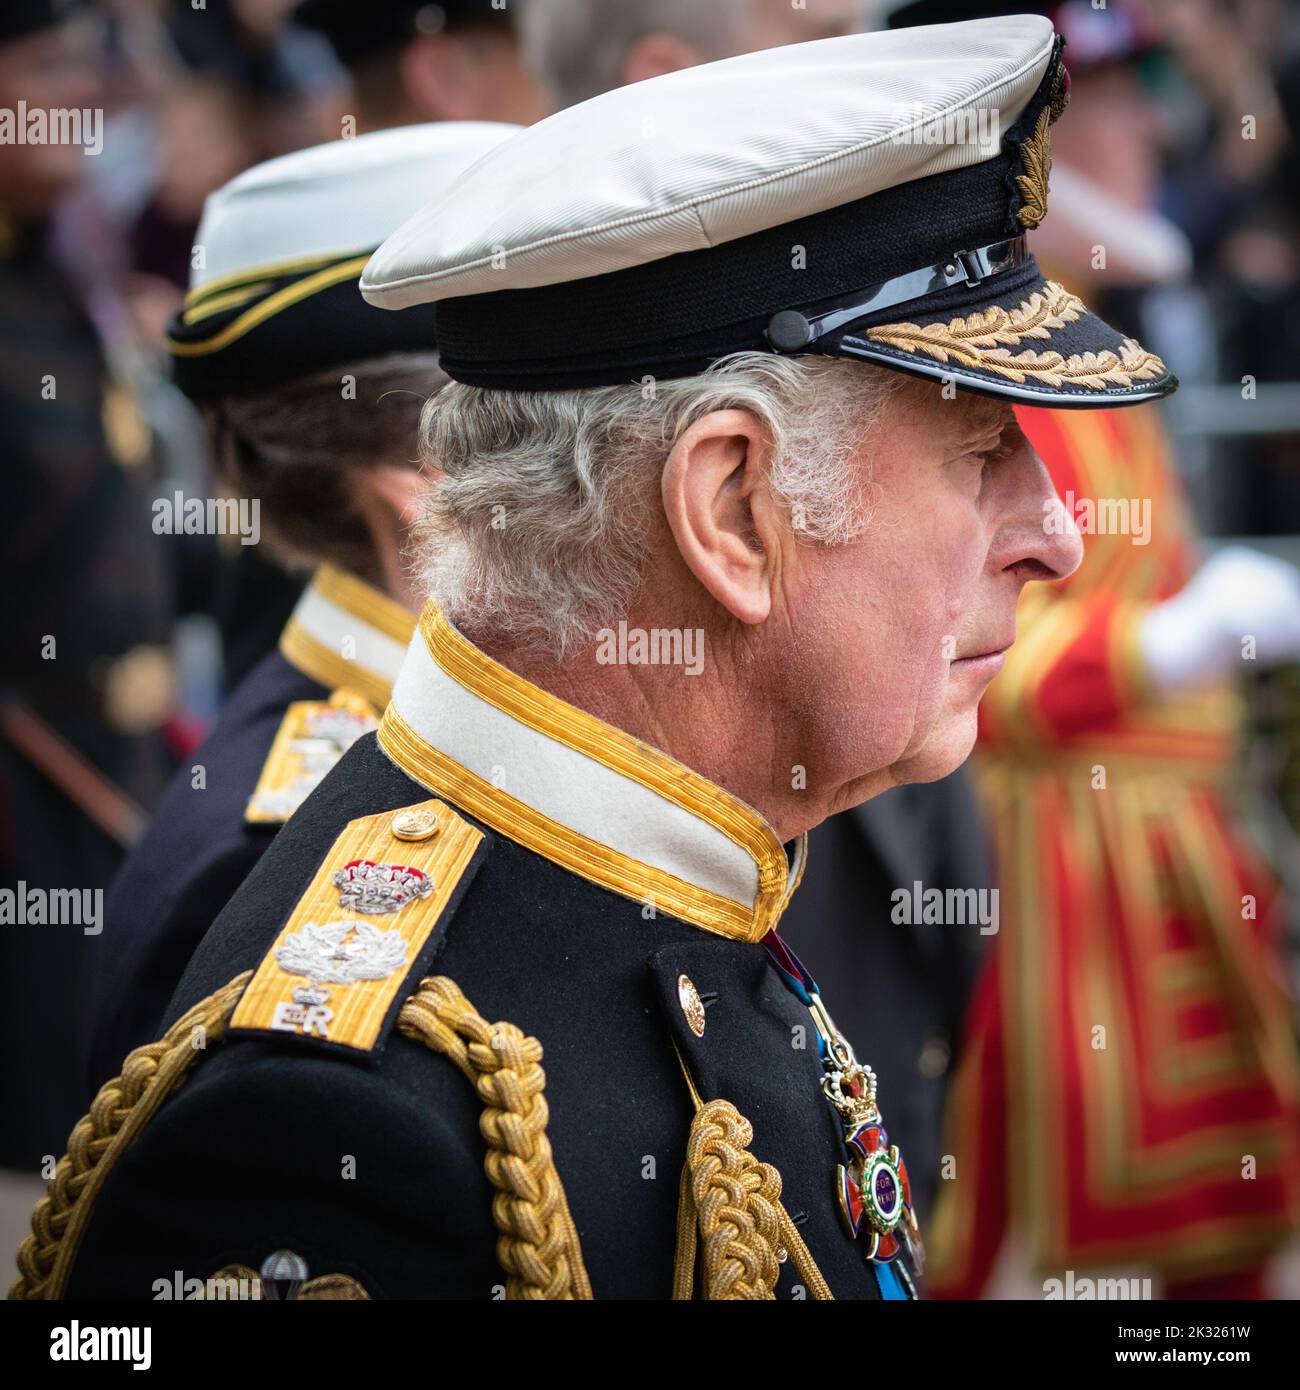 Le roi Charles III, le monarque en gros profil marche dans le cortège funéraire de la reine Elizabeth II à Londres, Angleterre, Royaume-Uni Banque D'Images